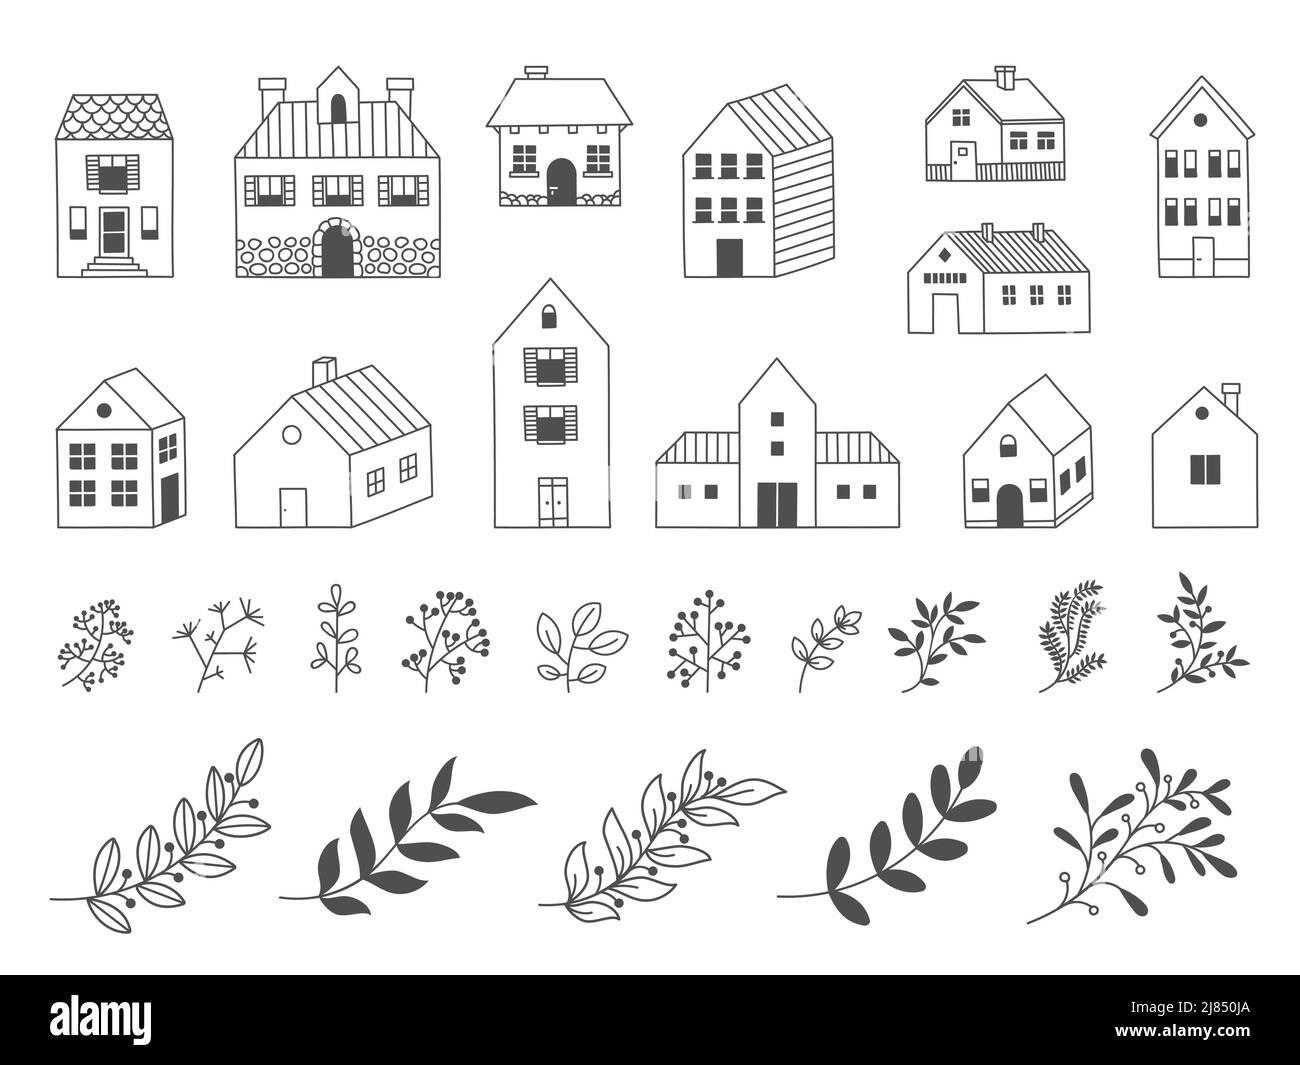 Doodle Garden House. Bâtiment rural en bois dessiné à la main avec éléments décoratifs fleuristes, fleurs feuilles herbe. Ensemble isolé de cabine Vector Country Illustration de Vecteur